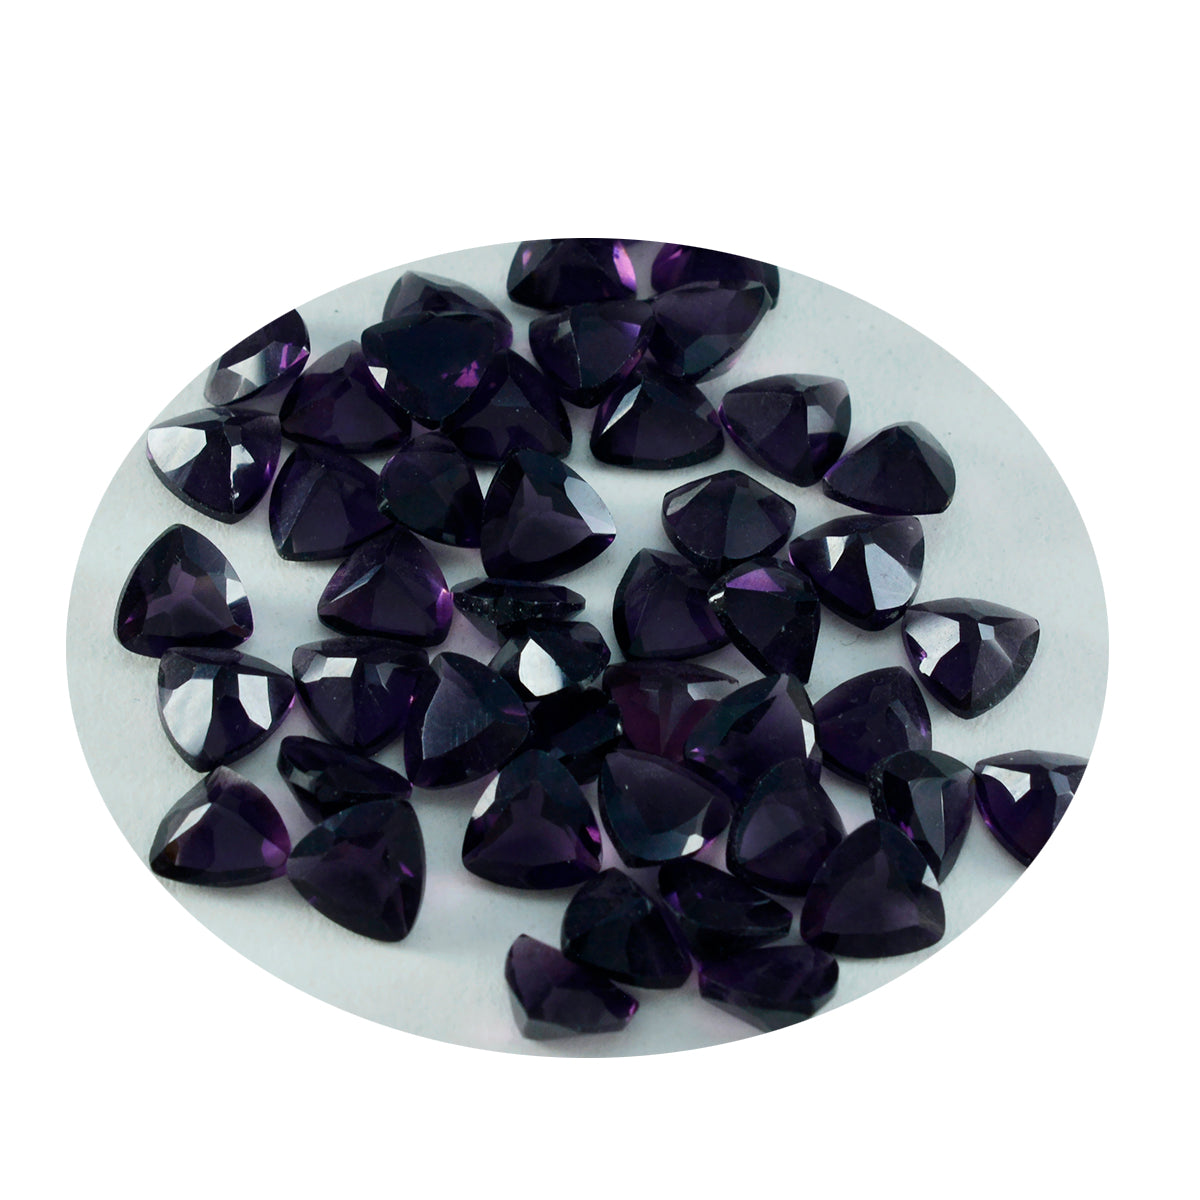 Riyogems 1 Stück violetter Amethyst, CZ, facettiert, 6 x 6 mm, Billionenform, gute Qualität, lose Edelsteine